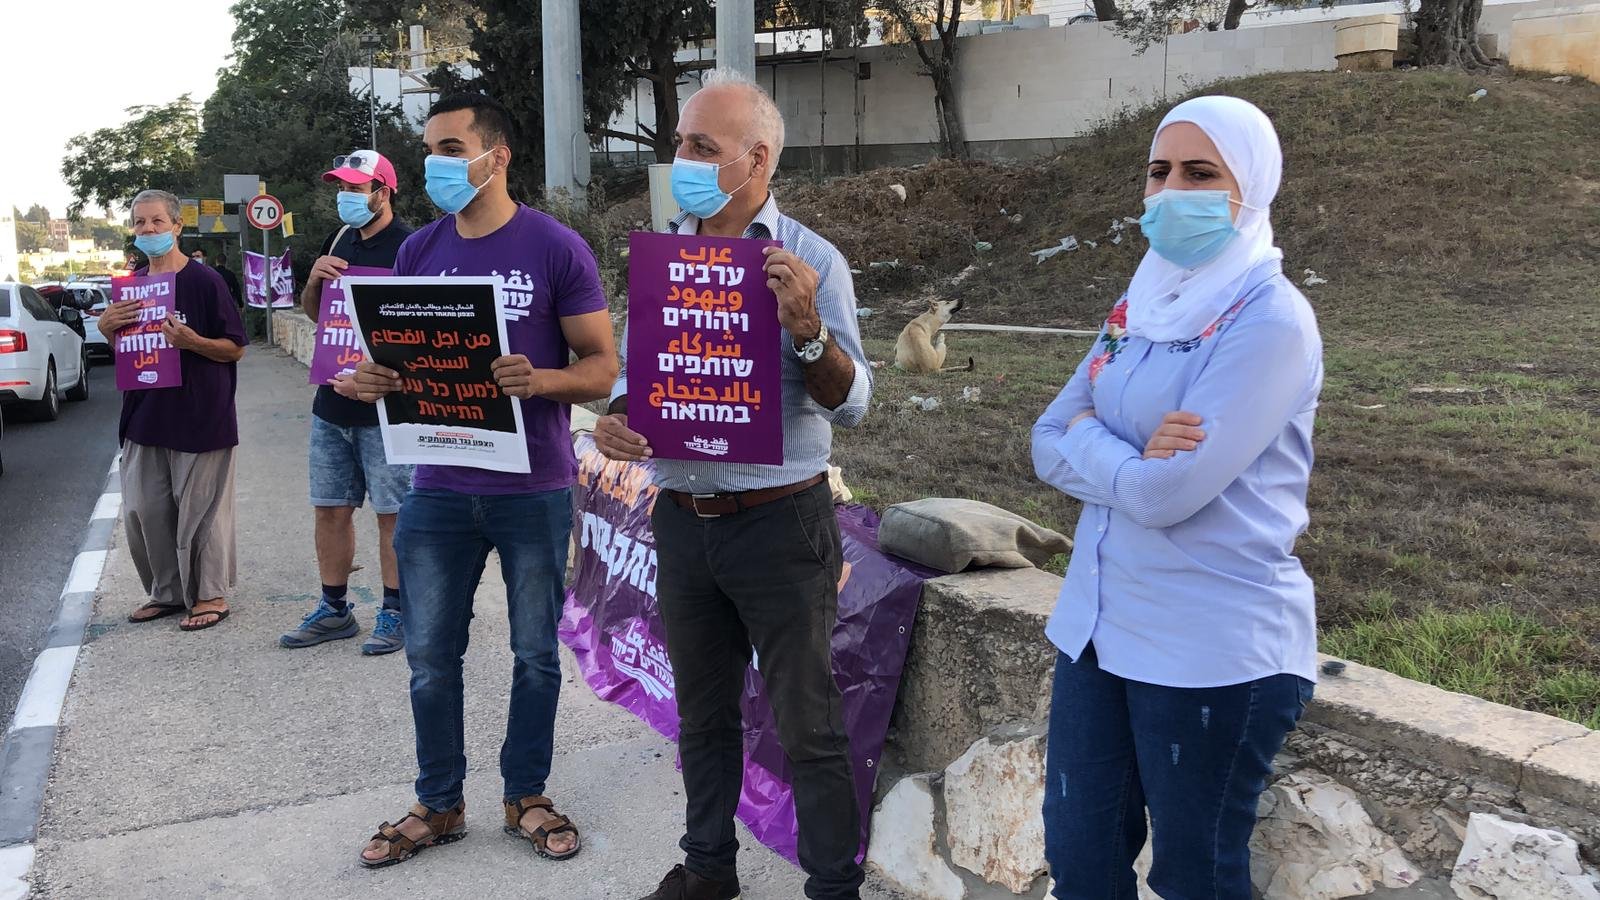 وقفة احتجاجية امام مبنى المحاكم في الناصرة تطالب بالعدالة الاجتماعية وتغيير المنظومة الحكومية الحالية-6